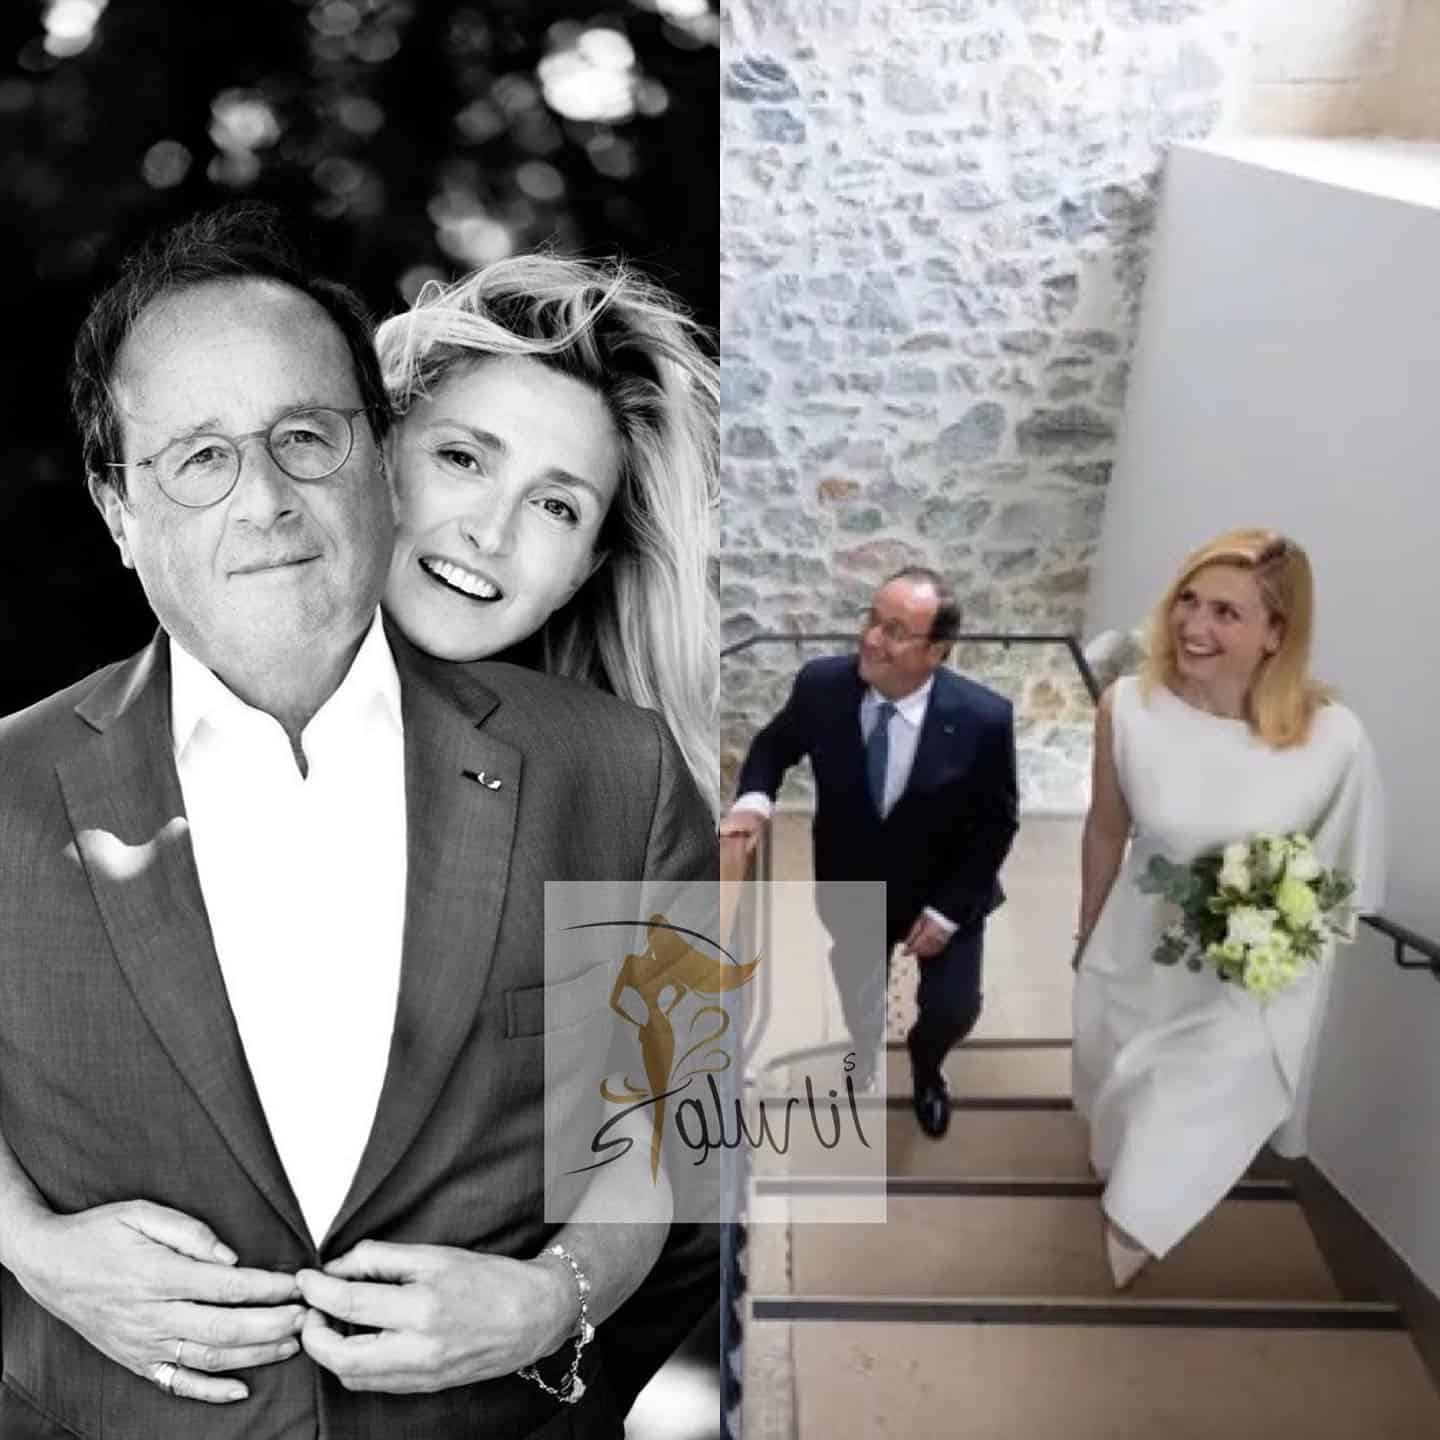 Hochzeit von Francois Hollande und Julie Gayet